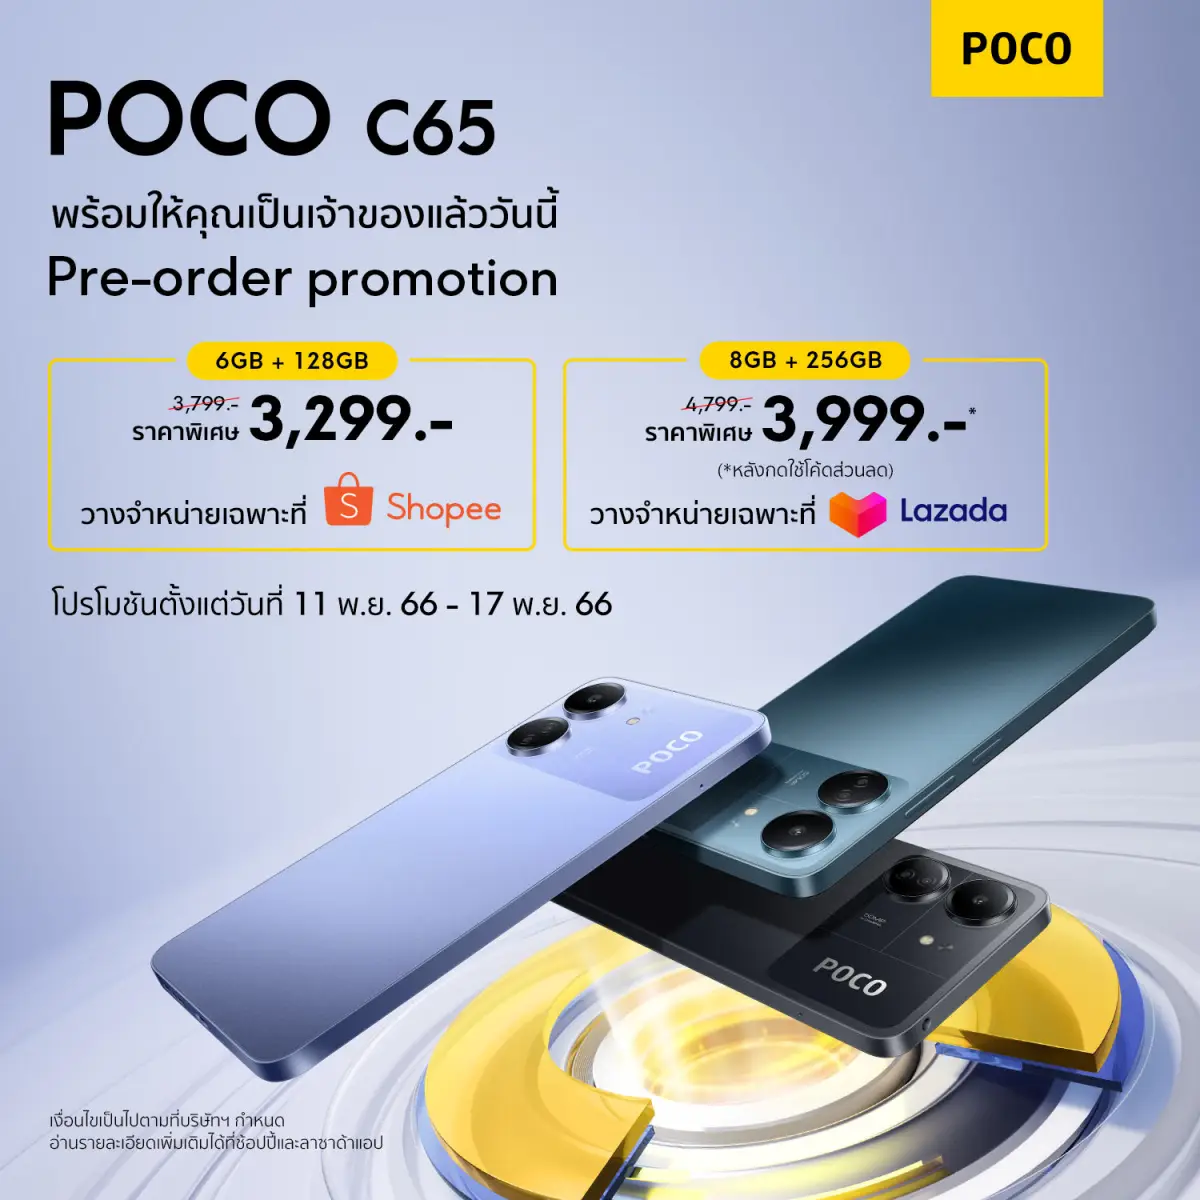 POCO C65 สมาร์ทโฟน